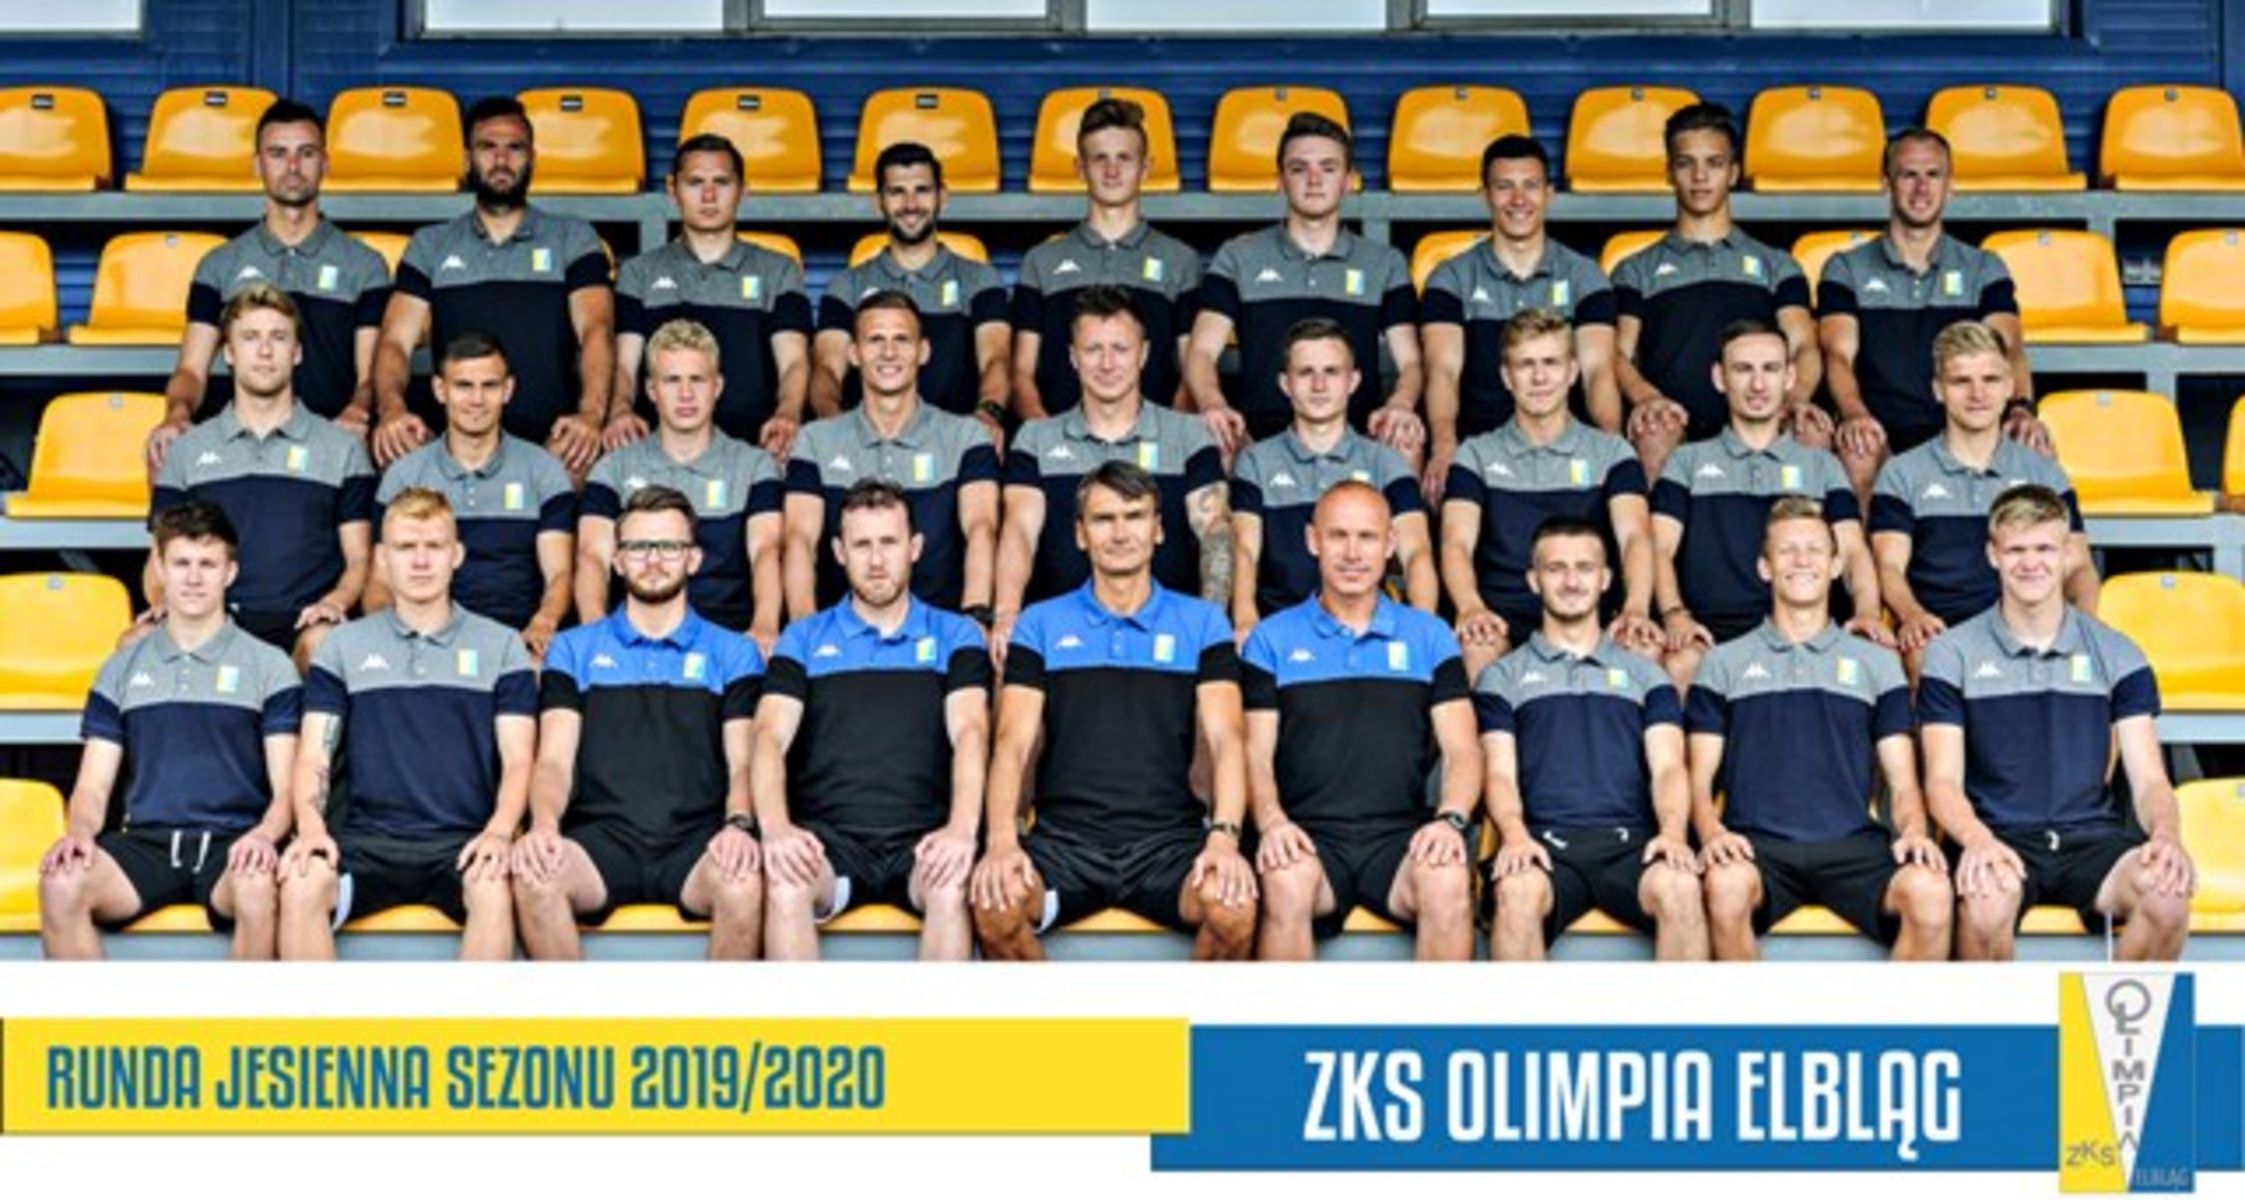 Olimpia Elbląg. Fot. zksolimpia.pl